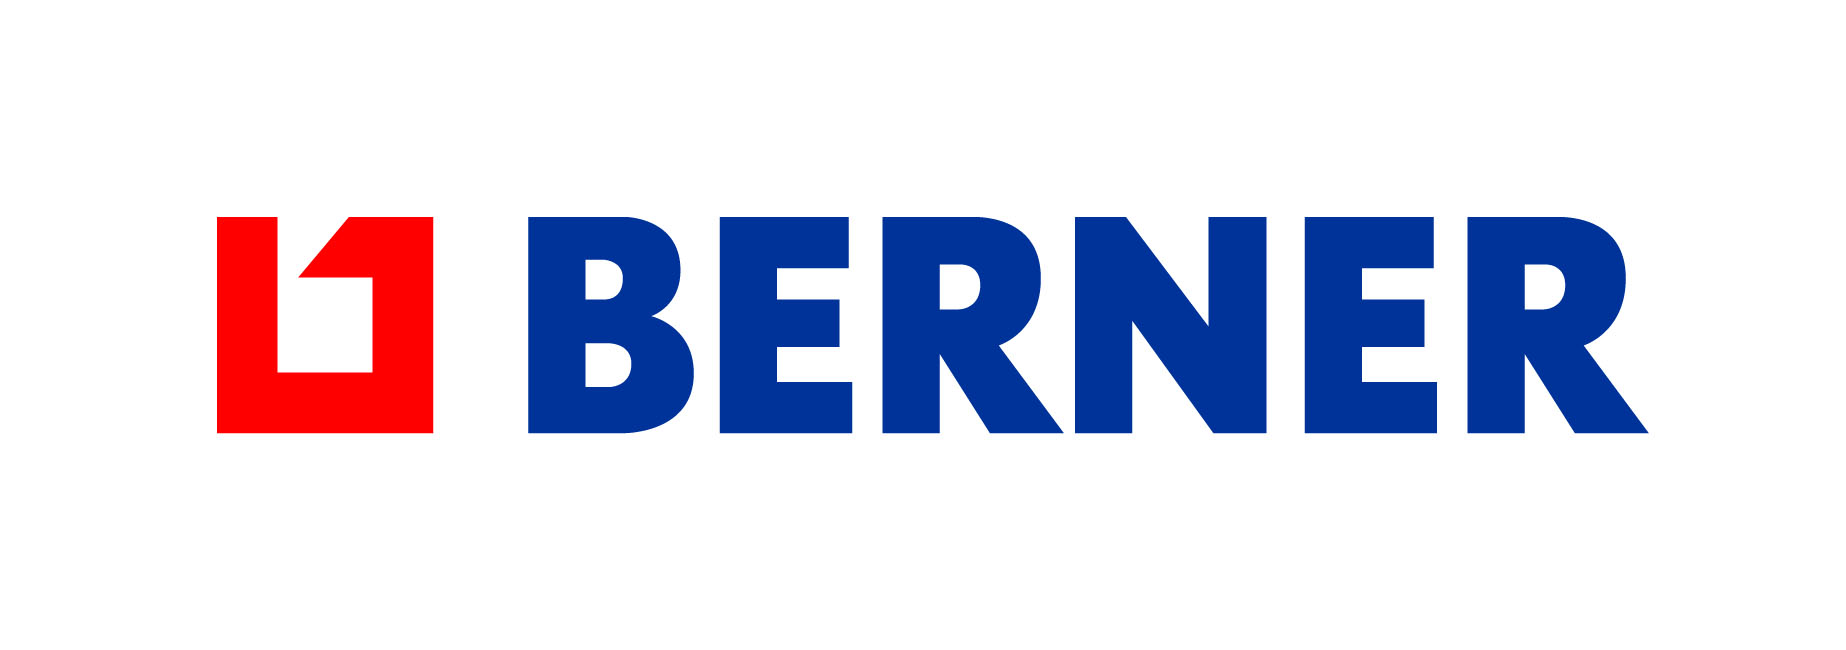 Berner_logo